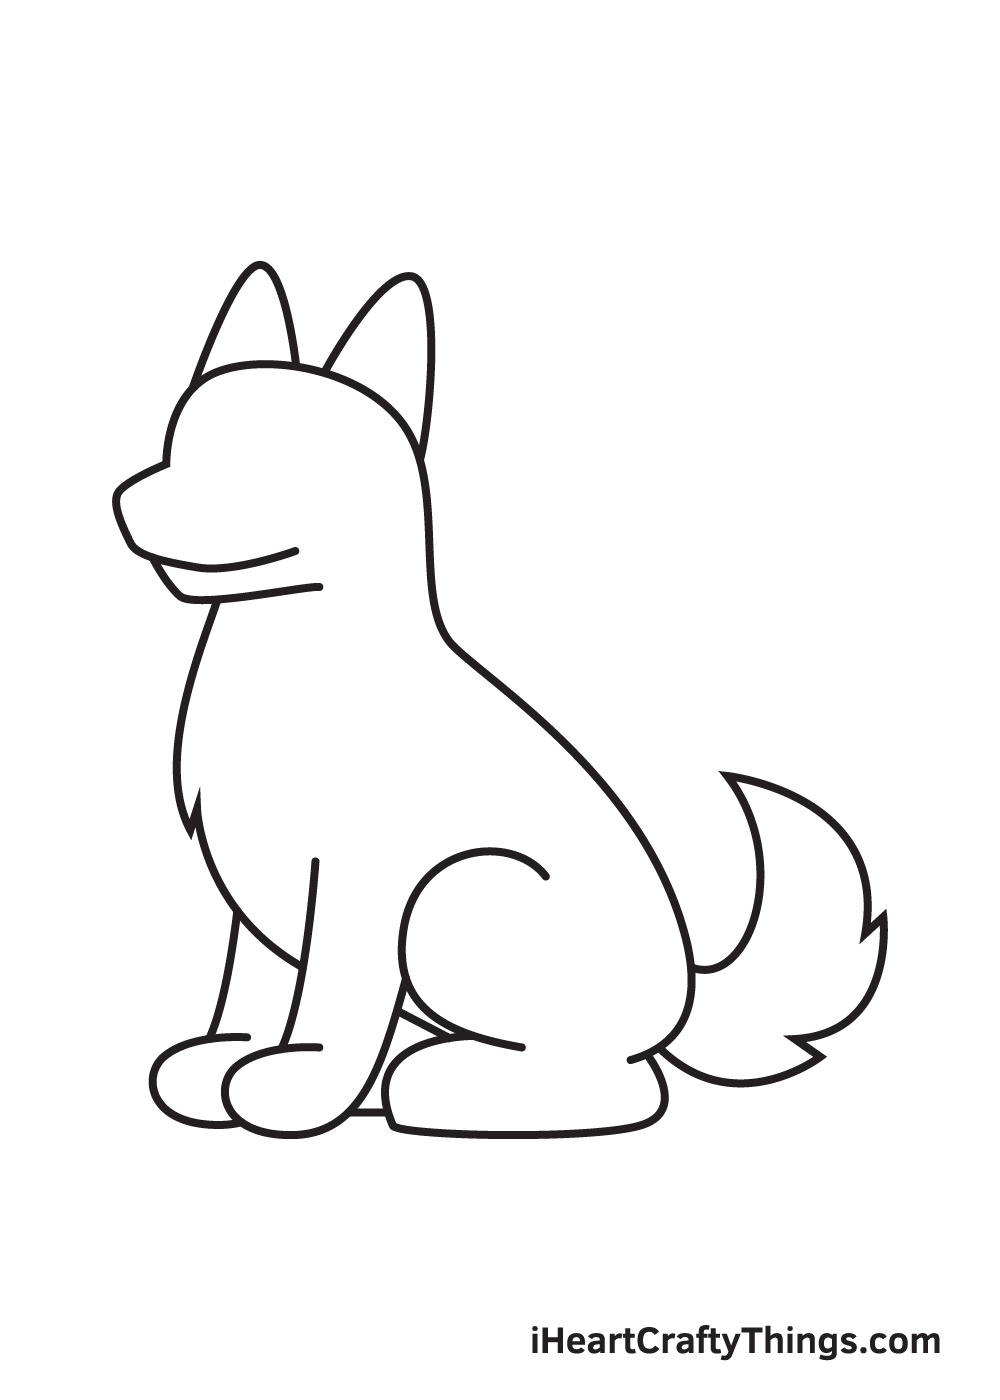 German Sheperd DRAWING – STEP 7 - Cách vẽ con chó đơn giản với 8 bước cơ bản có hướng dẫn chi tiết